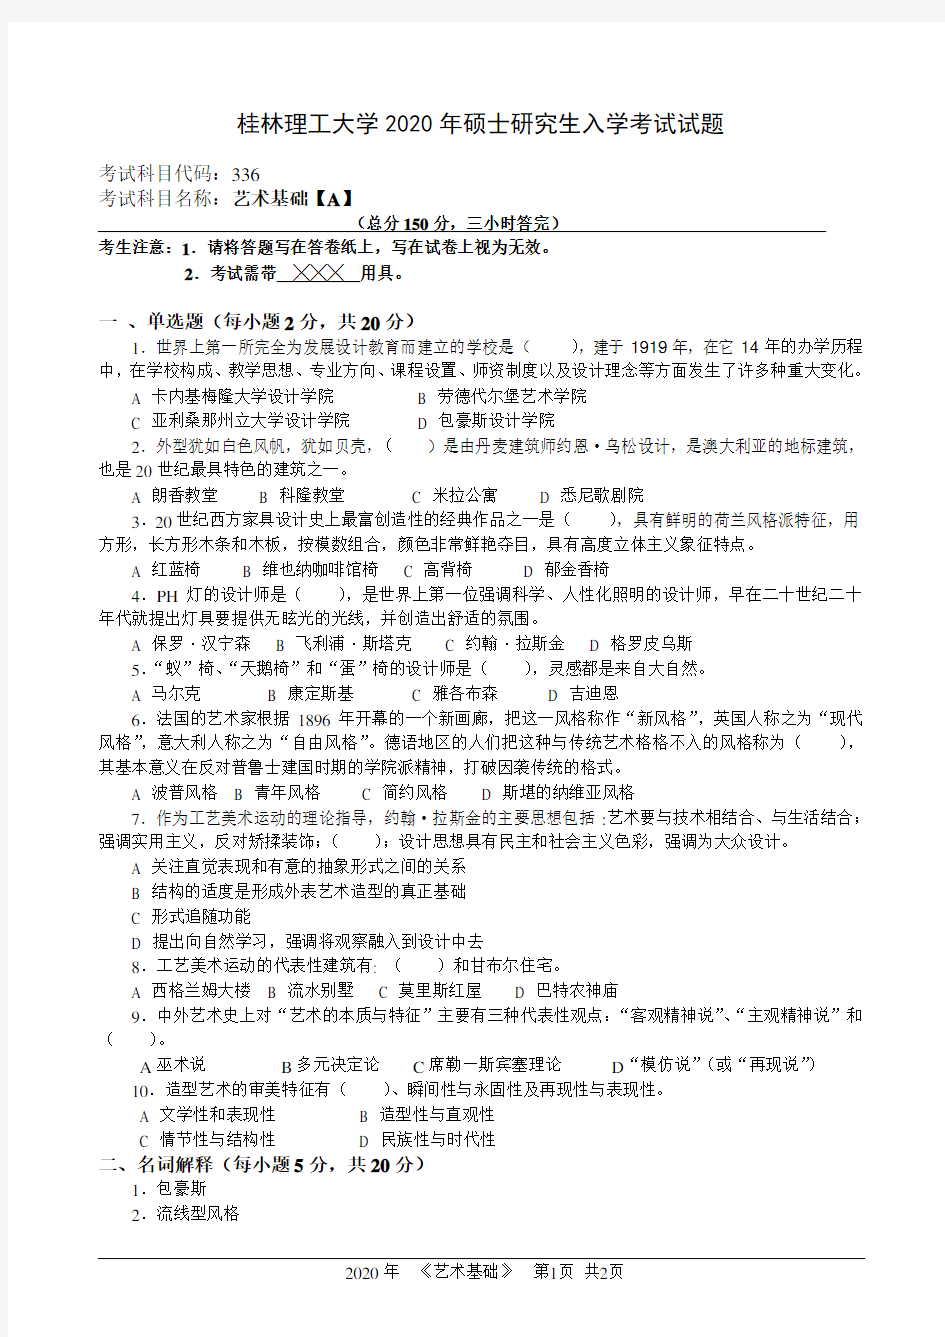 桂林理工大学2020年《336艺术基础(A)》考研专业课真题试卷